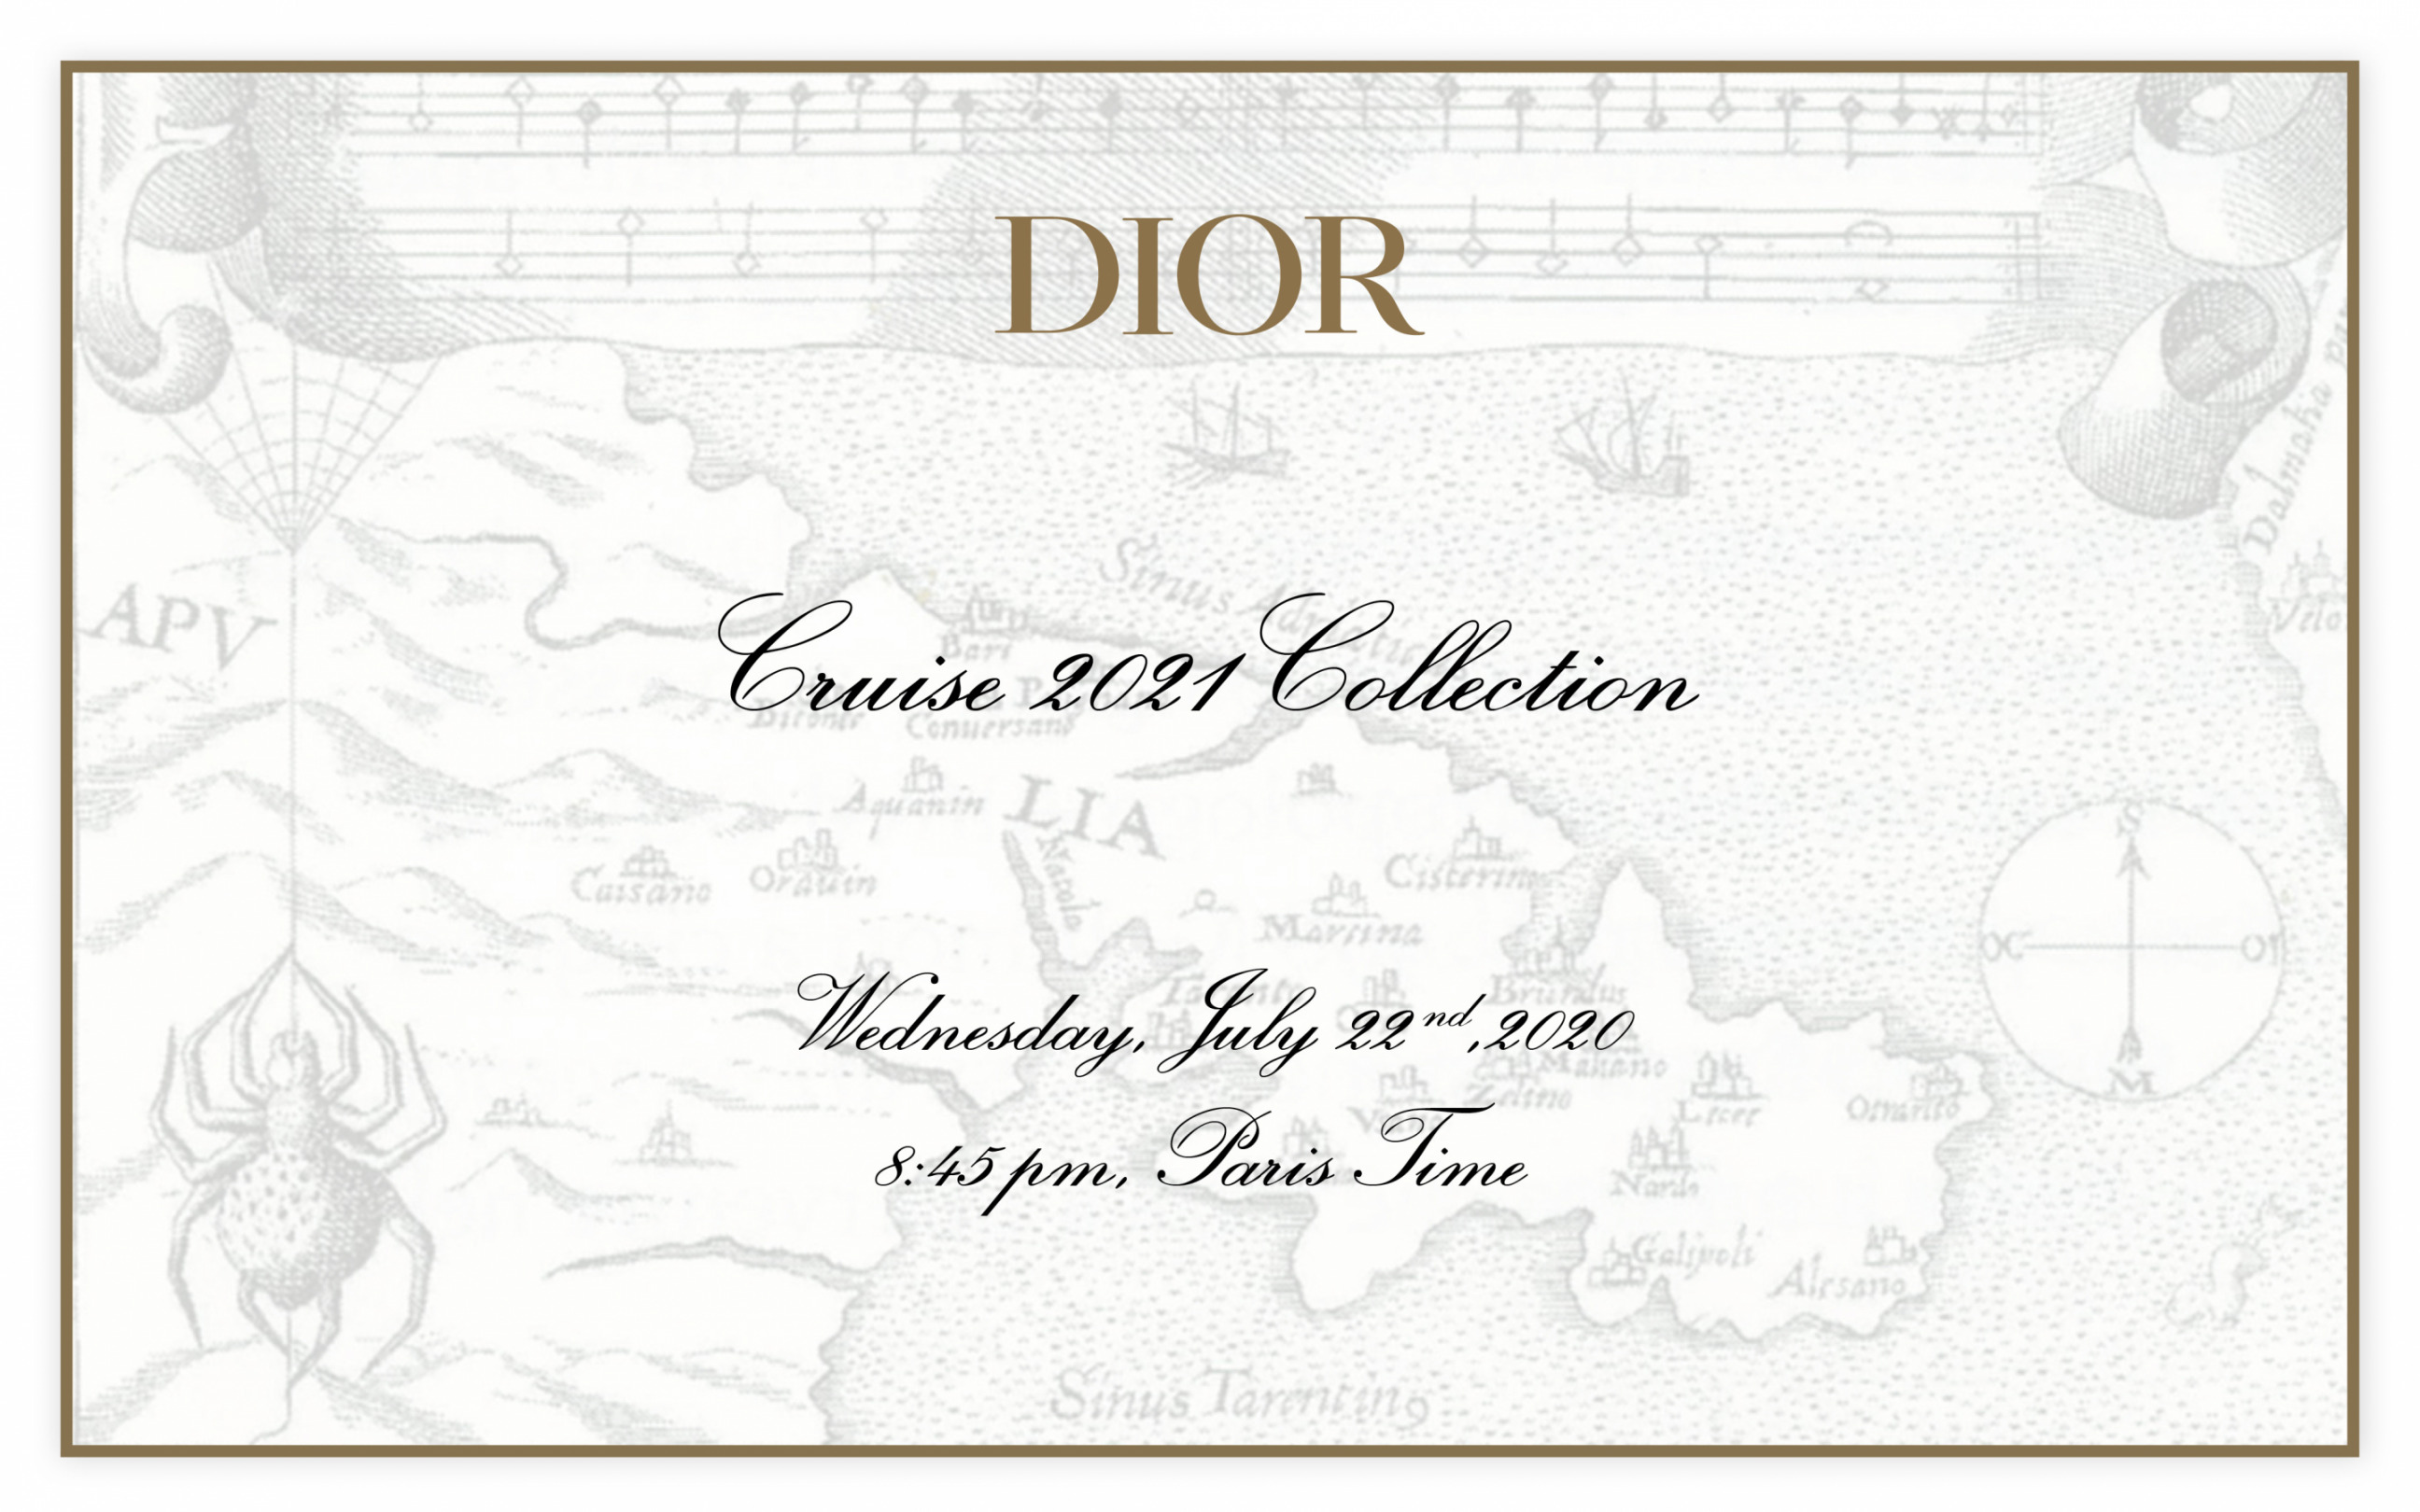 Canlı Yayın: Dior Cruise 2021 Defilesi